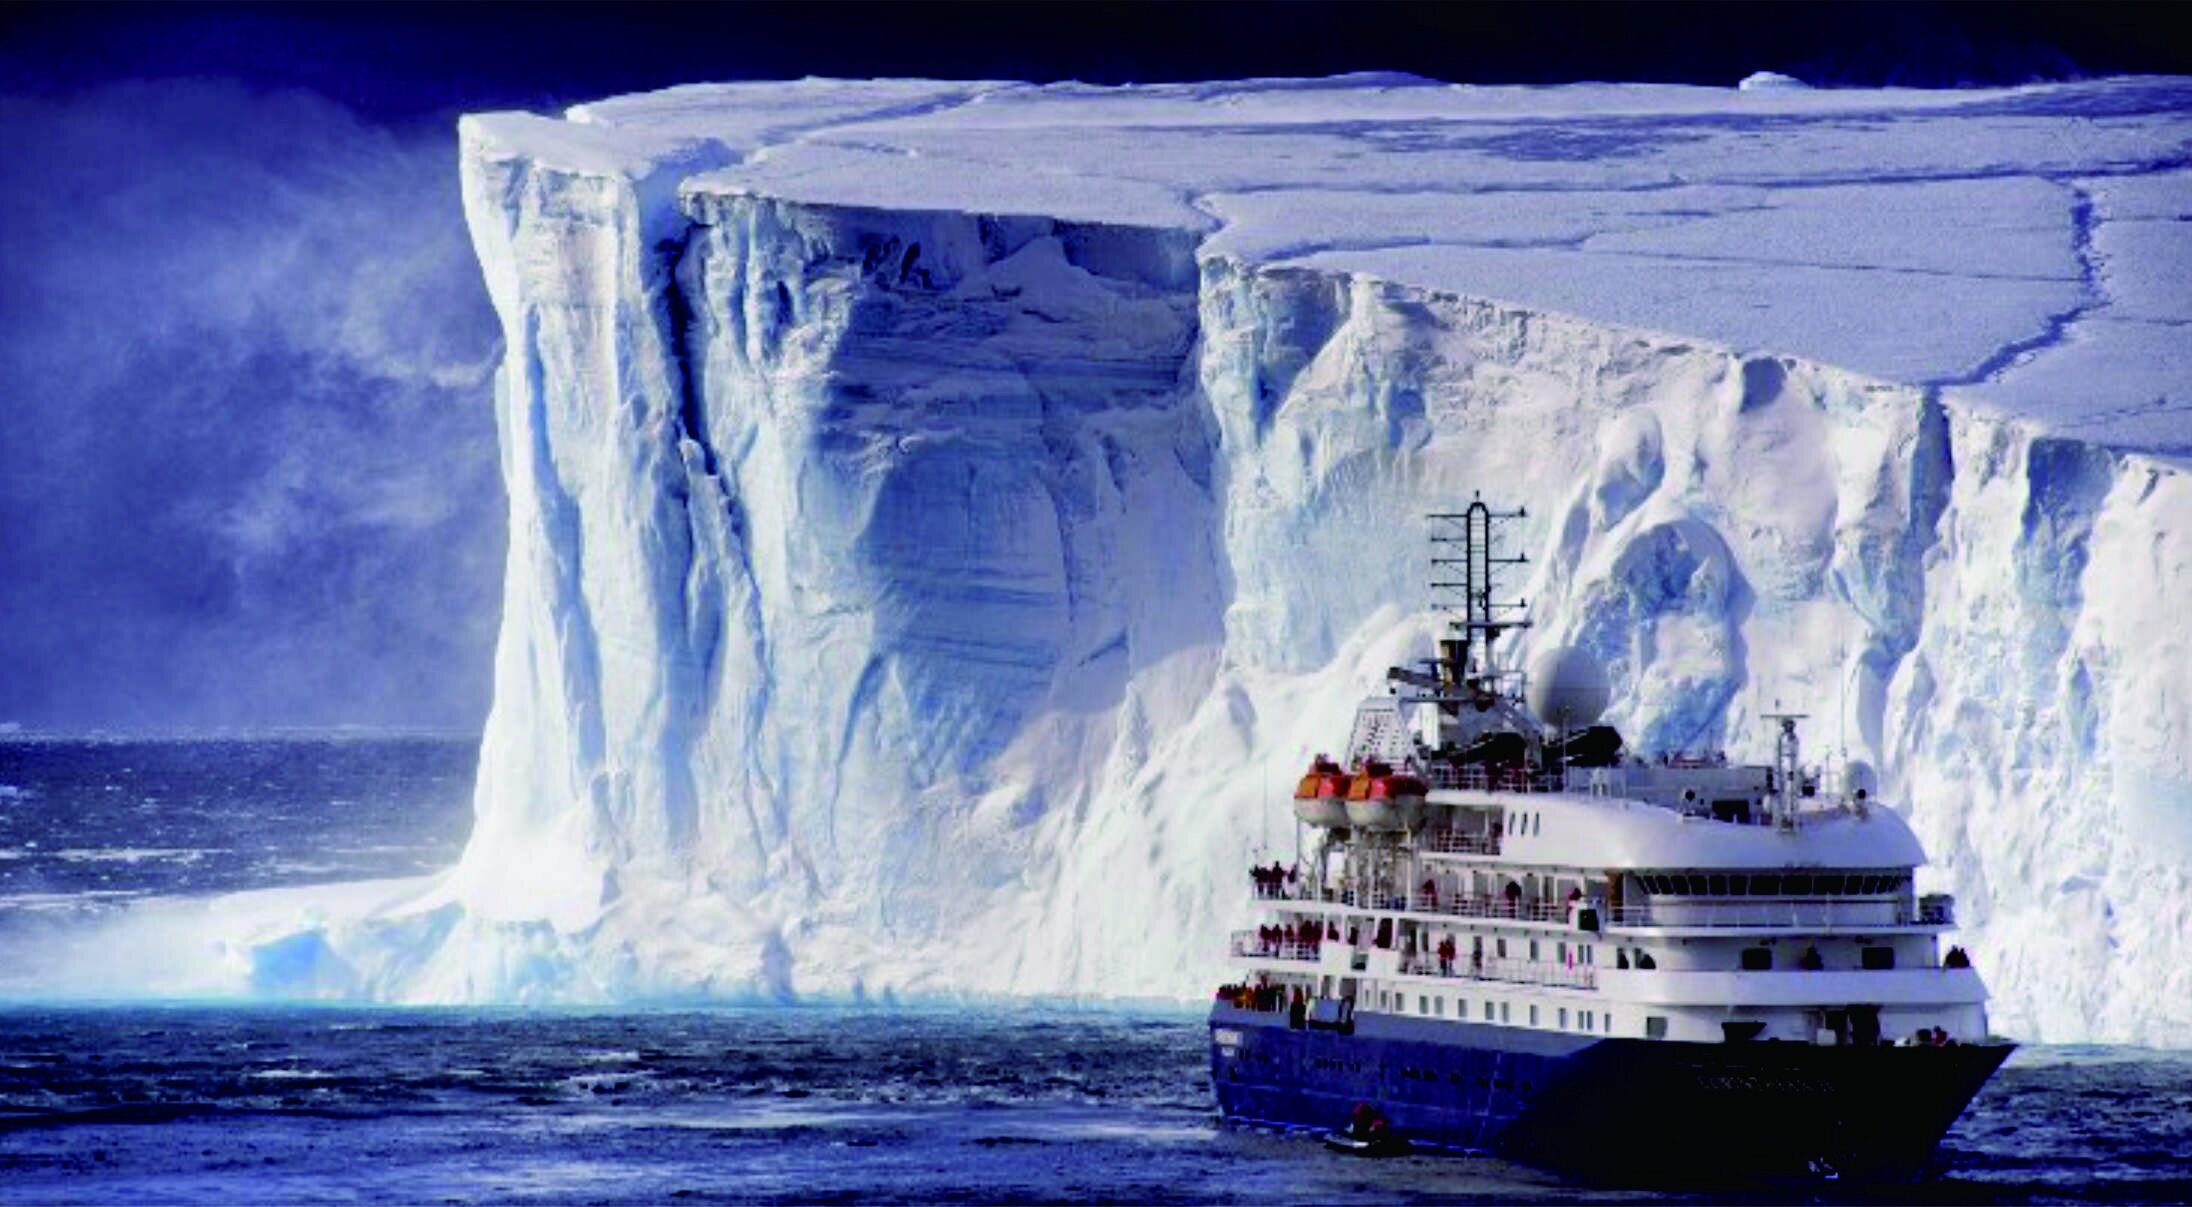 Ingin Wisata di Antartika? Ini Dia 7 Aturan yang Harus Kamu Patuhi